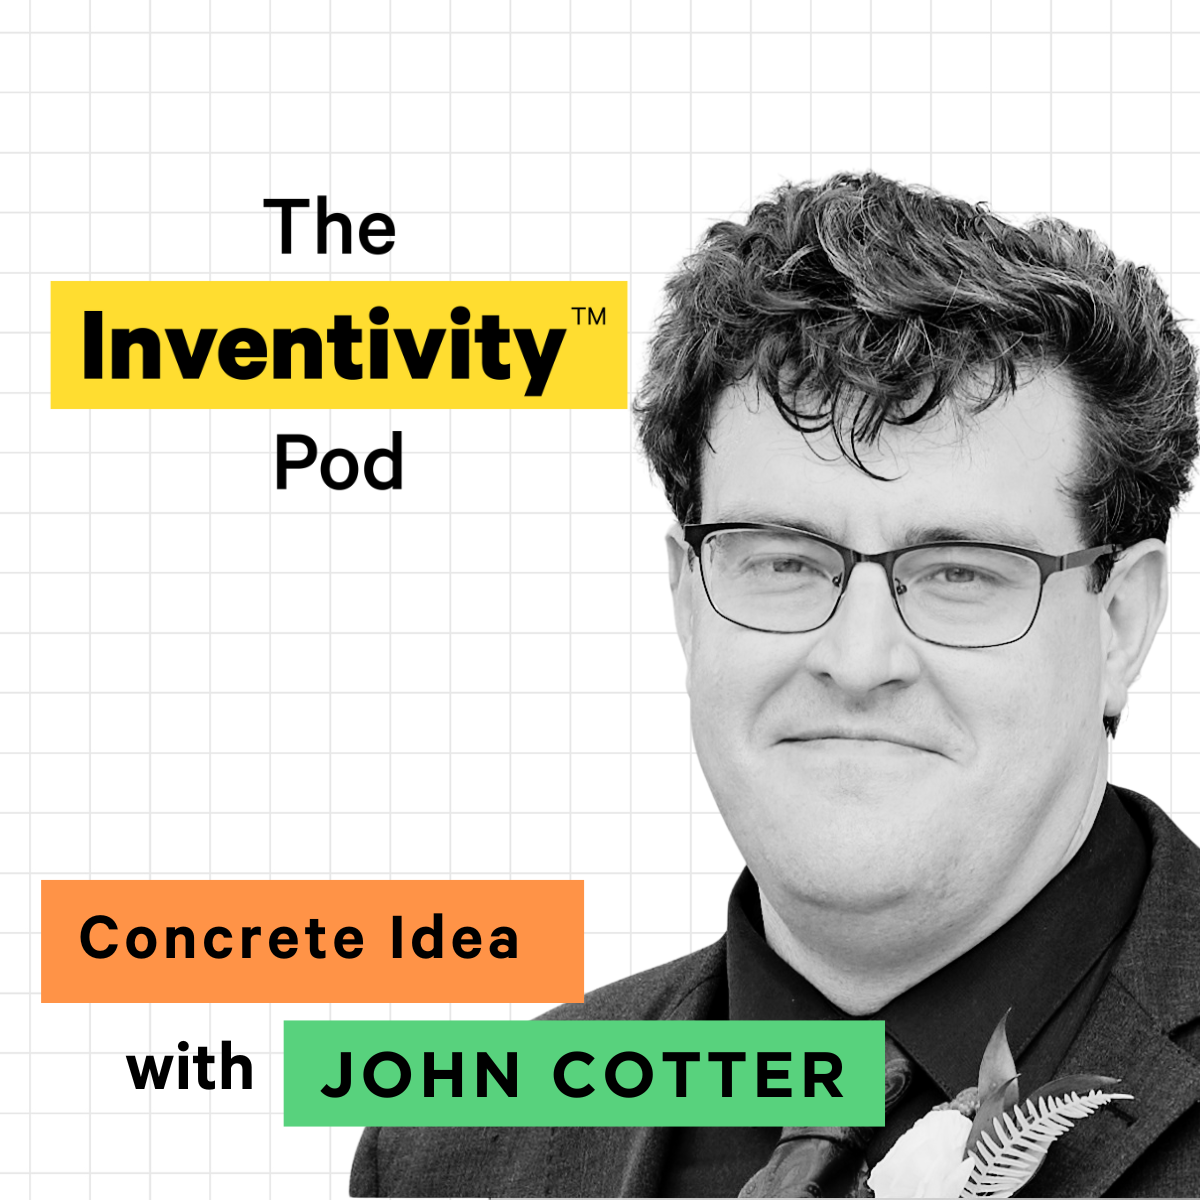 Dr. John Cotter’s Concrete Idea